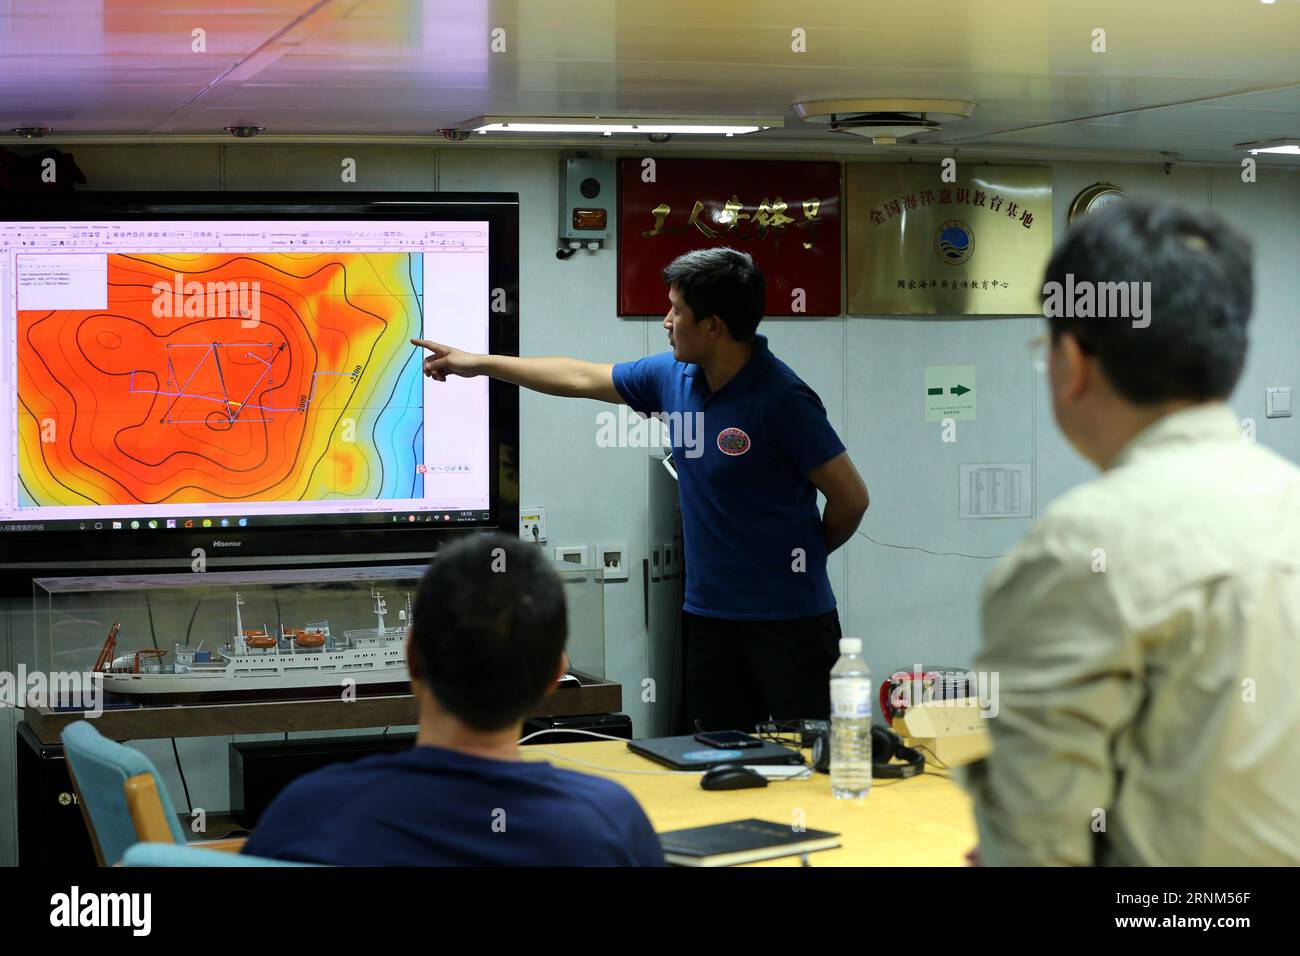 (170510) -- A BORDO DELLA NAVE XIANGYANGHONG 09, 10 maggio 2017 -- il membro dell'equipaggio Qi Haibin studia la rotta per la missione subacquea di Jiaolong, sommergibile con equipaggio cinese, nel Mar Cinese meridionale, nella Cina meridionale, alla base di comando a bordo della nave Xiangyanghong 09, 9 maggio 2017. Jiaolong ha condotto la sua ultima immersione mercoledì nel Mar Cinese meridionale durante la seconda tappa della 38a spedizione scientifica oceanica cinese. (Ry) CHINA-MANNED SUBMERSIBLE-JIAOLONG (CN) LiuxShiping PUBLICATIONxNOTxINxCHN A bordo della nave Xiangyanghong 09 maggio 10 2017 il membro dell'equipaggio Qi Haibin studia la rotta per la missione subacquea di Jiaolong Foto Stock